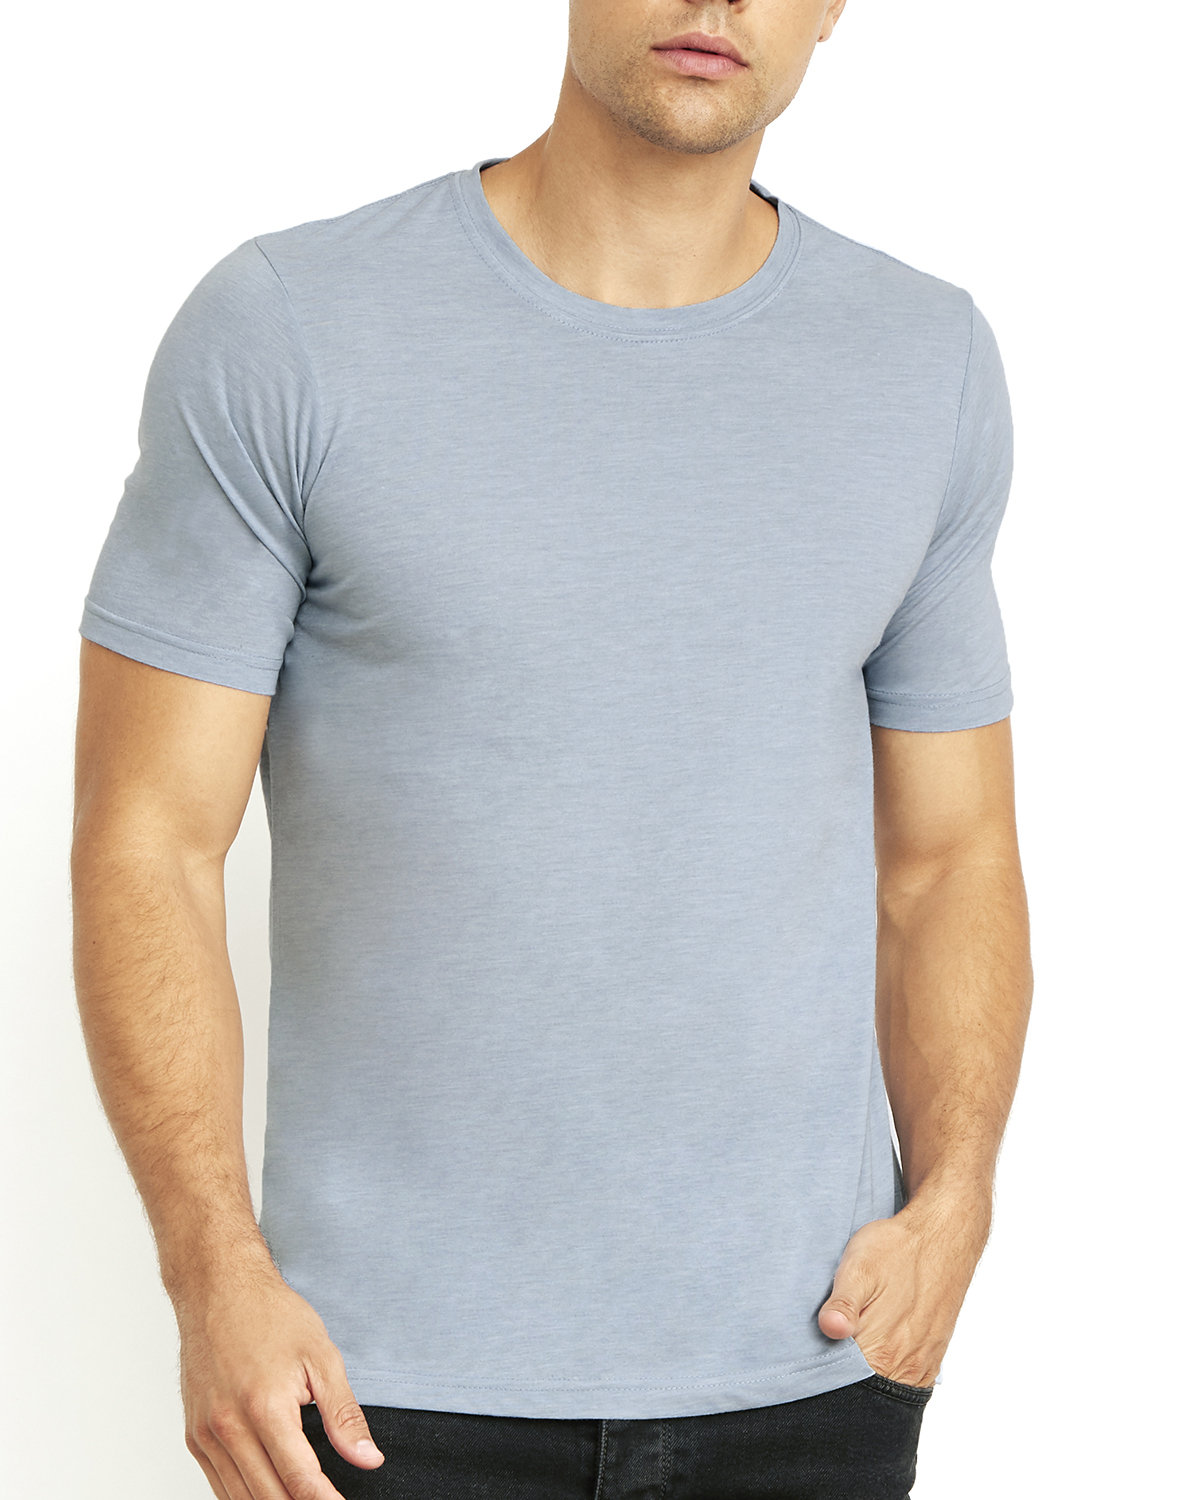 Next Level Apparel Men's Cotton Poly Crewneck T-Shirt, Classic